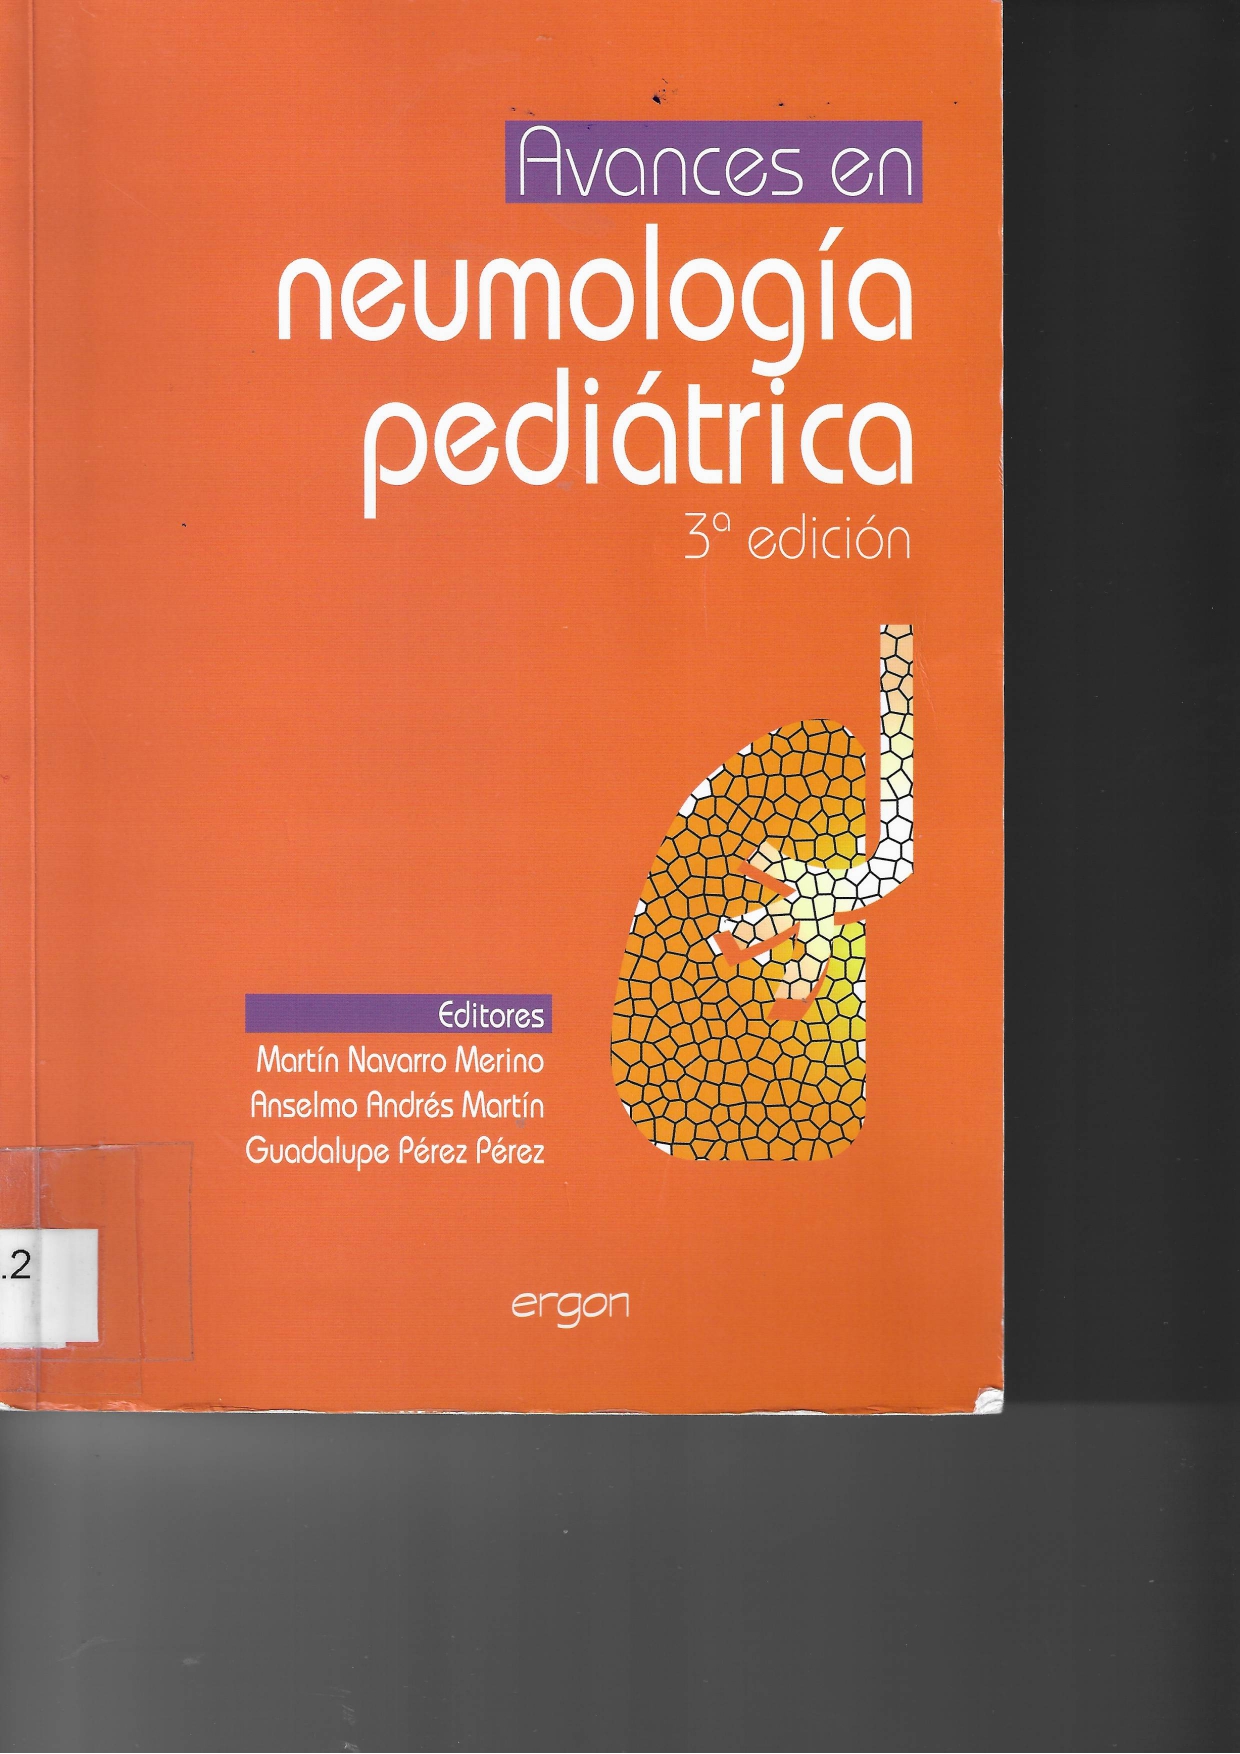 Imagen de portada del libro Avances en neumología pediátrica